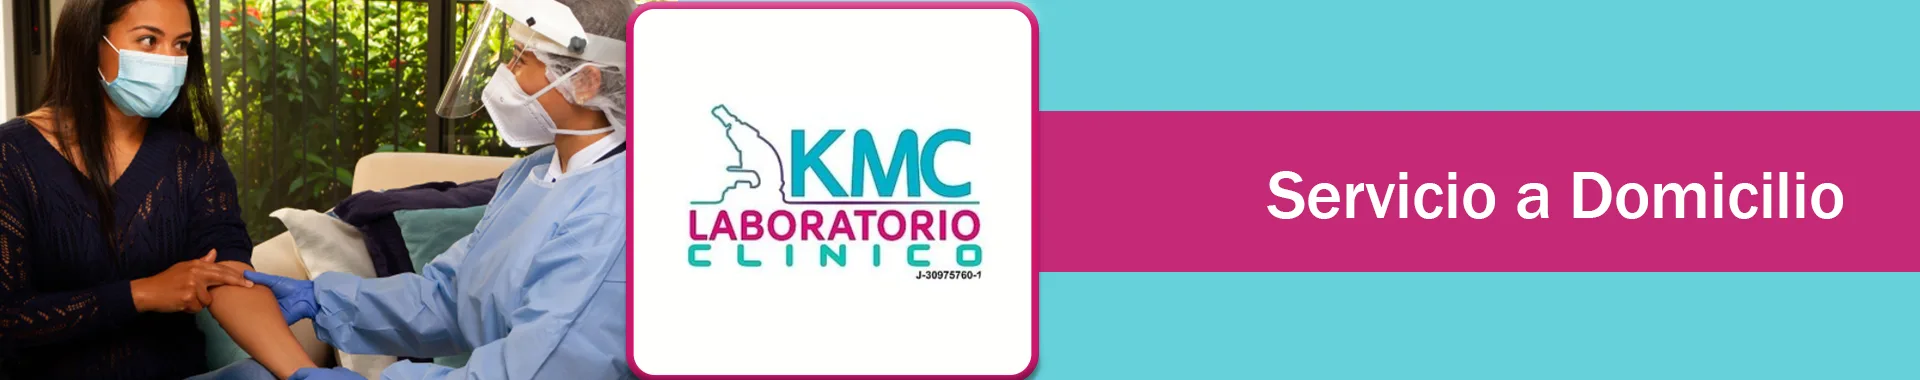 Imagen 6 del perfil de KMC Laboratorio Clínico